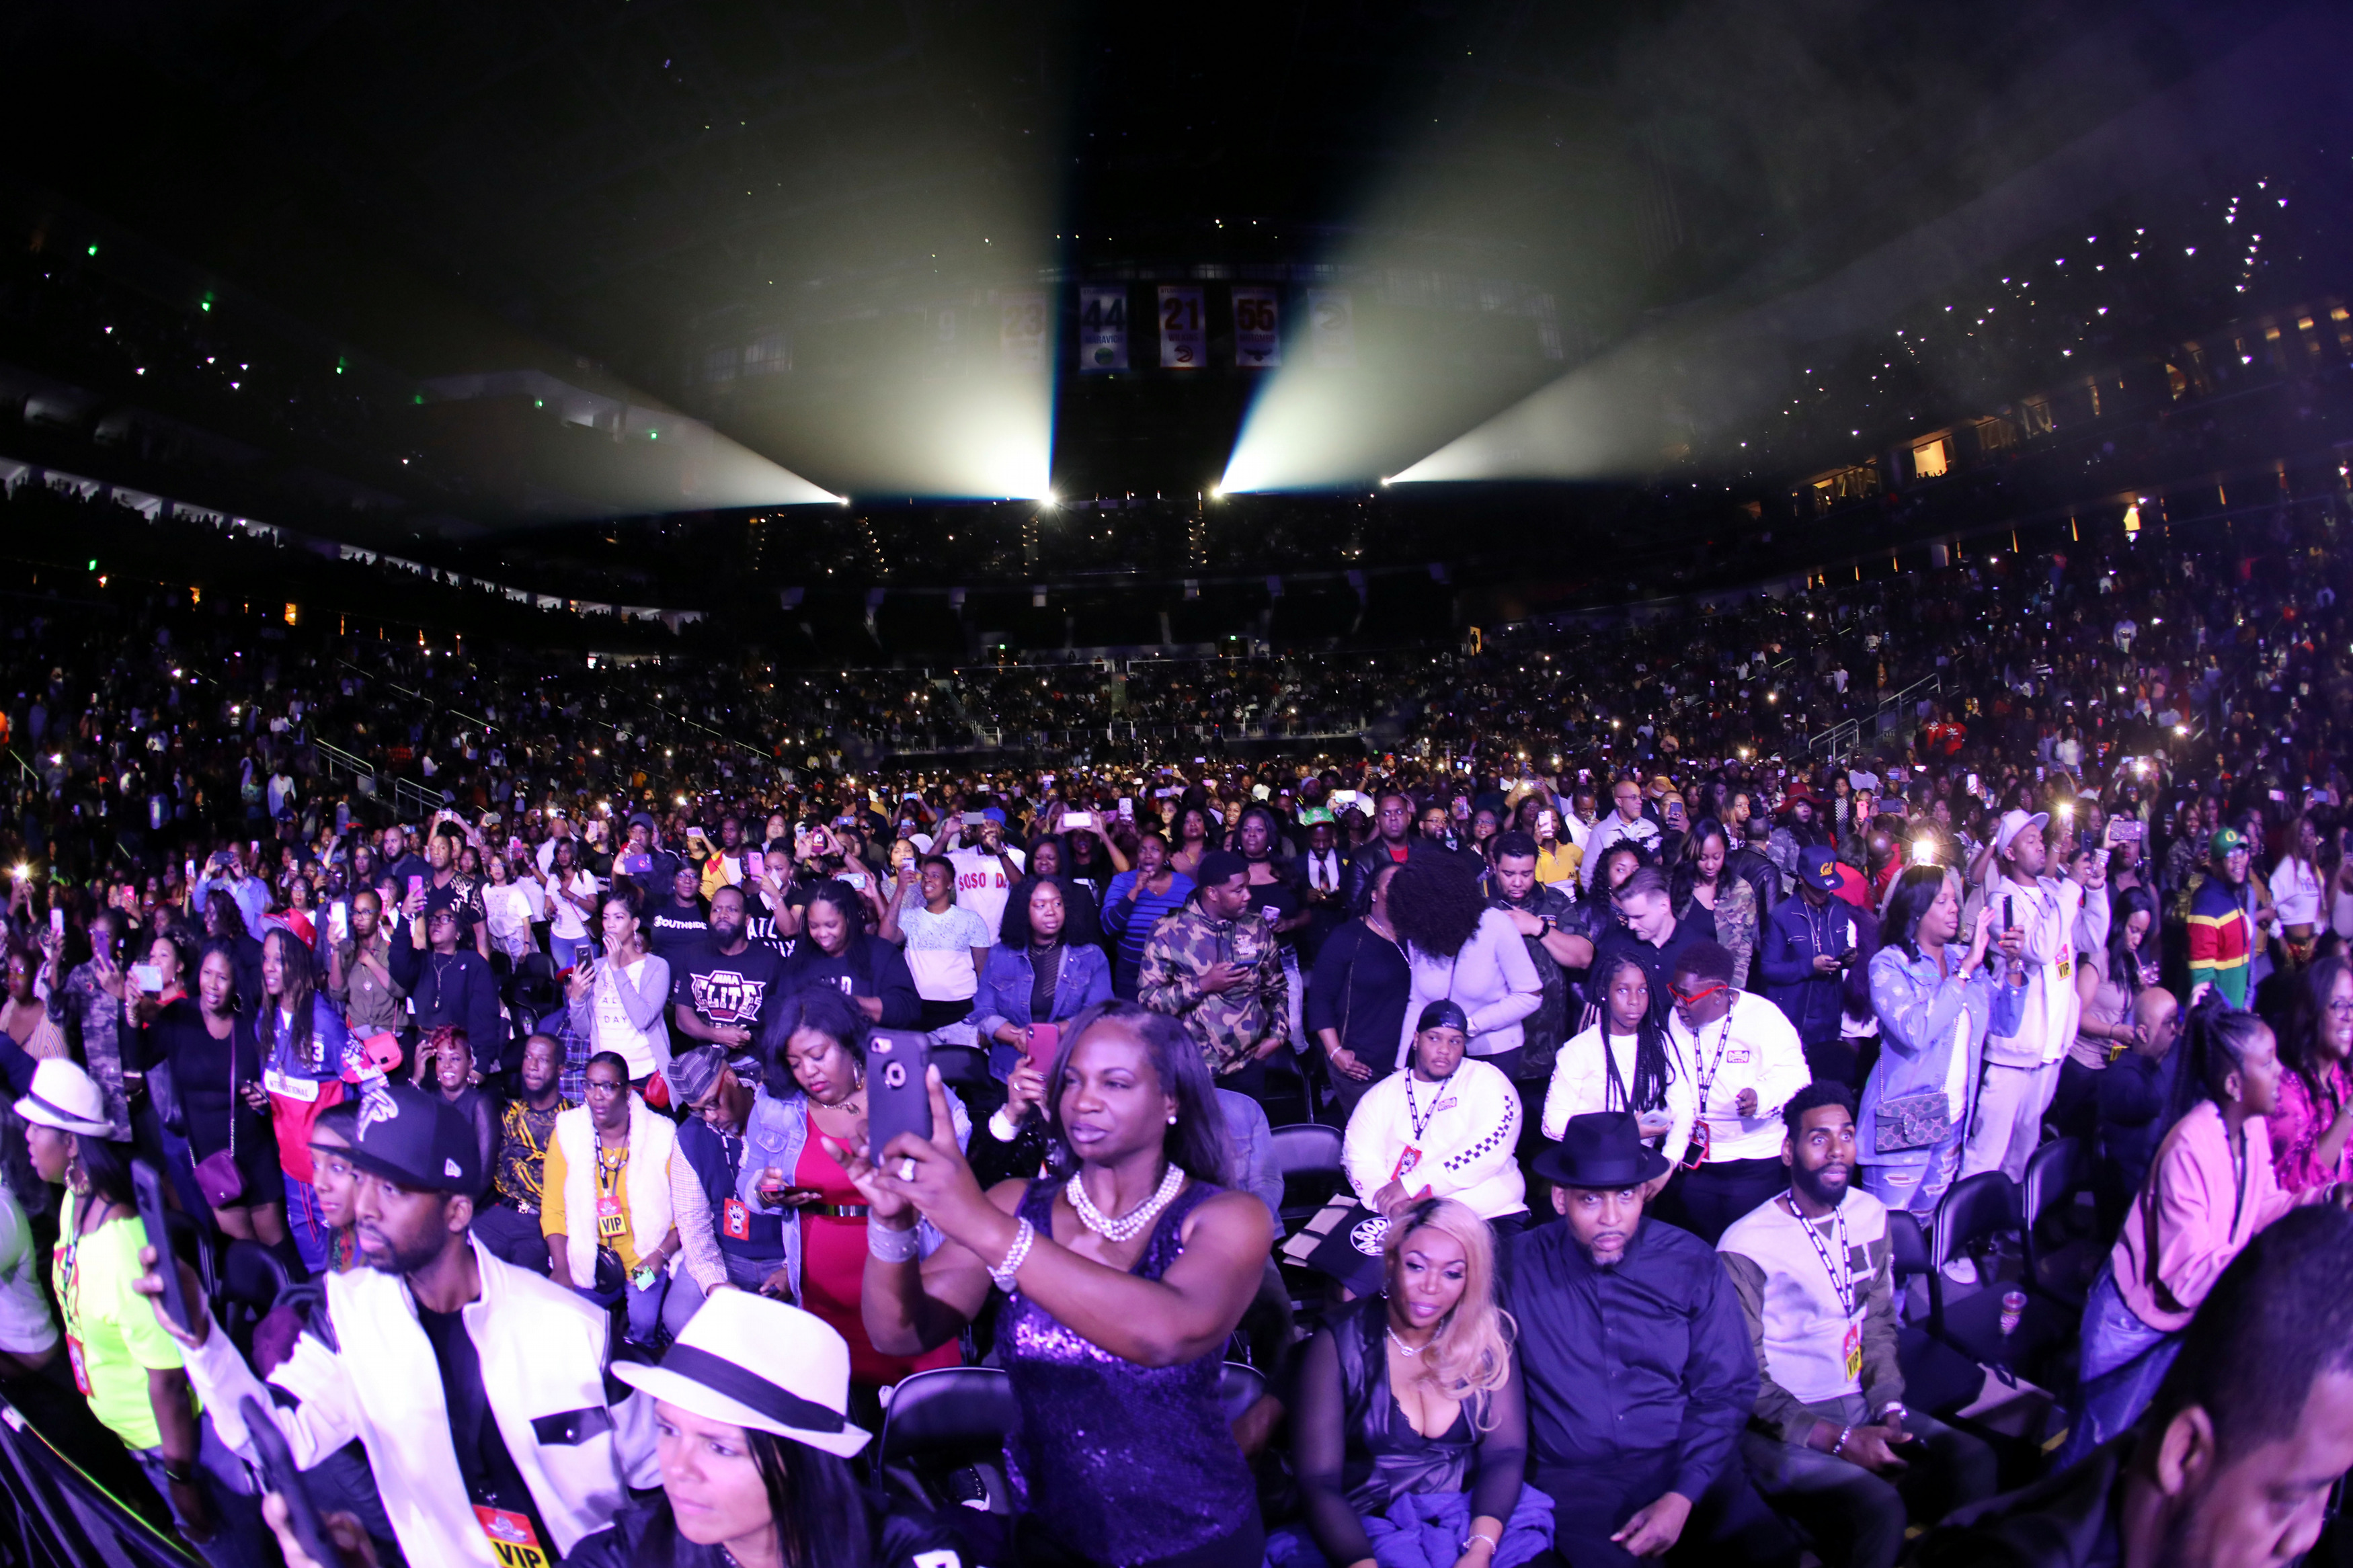 arena concert crowd